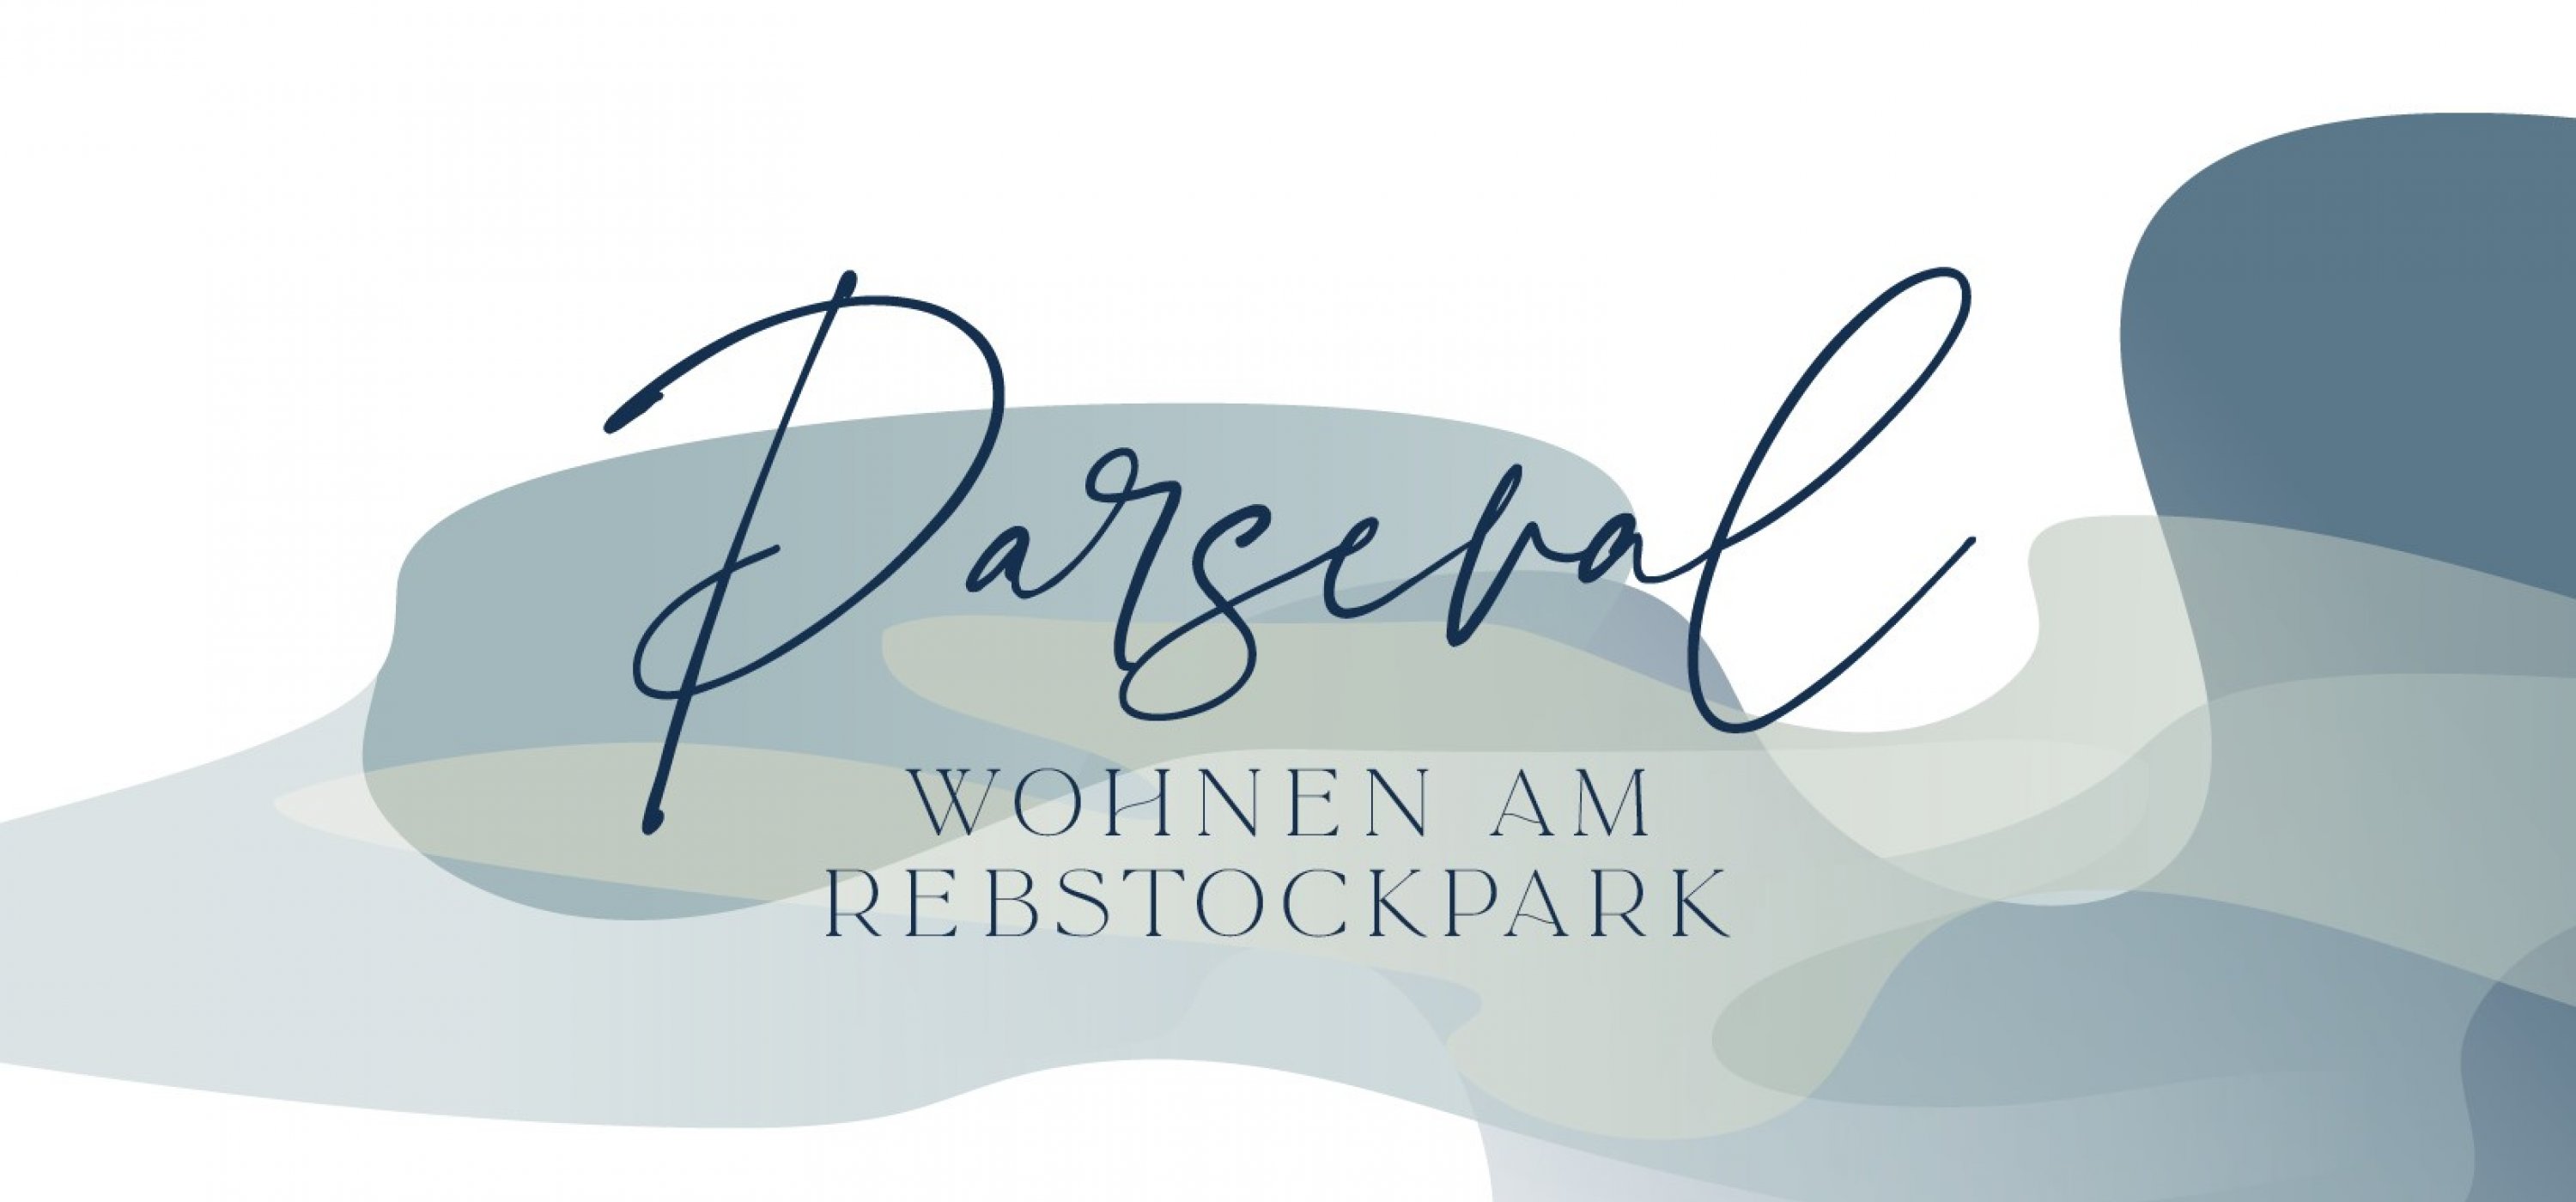 Parseval - Wohnen am Rebstockpark